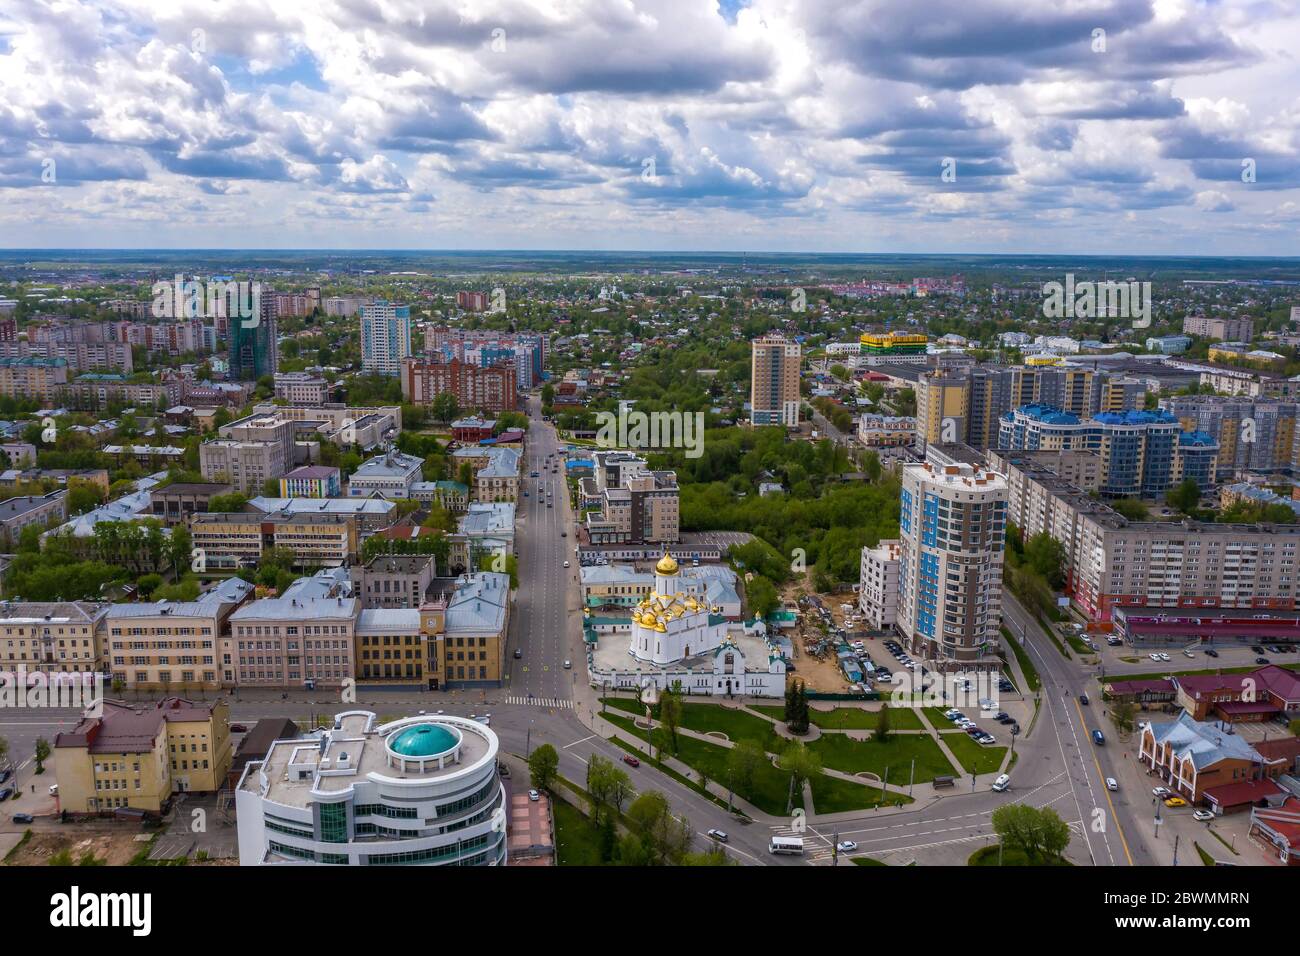 Pochtovaya and Zharova Street in the city of Ivanovo from a bird's flight, Russia. Stock Photo